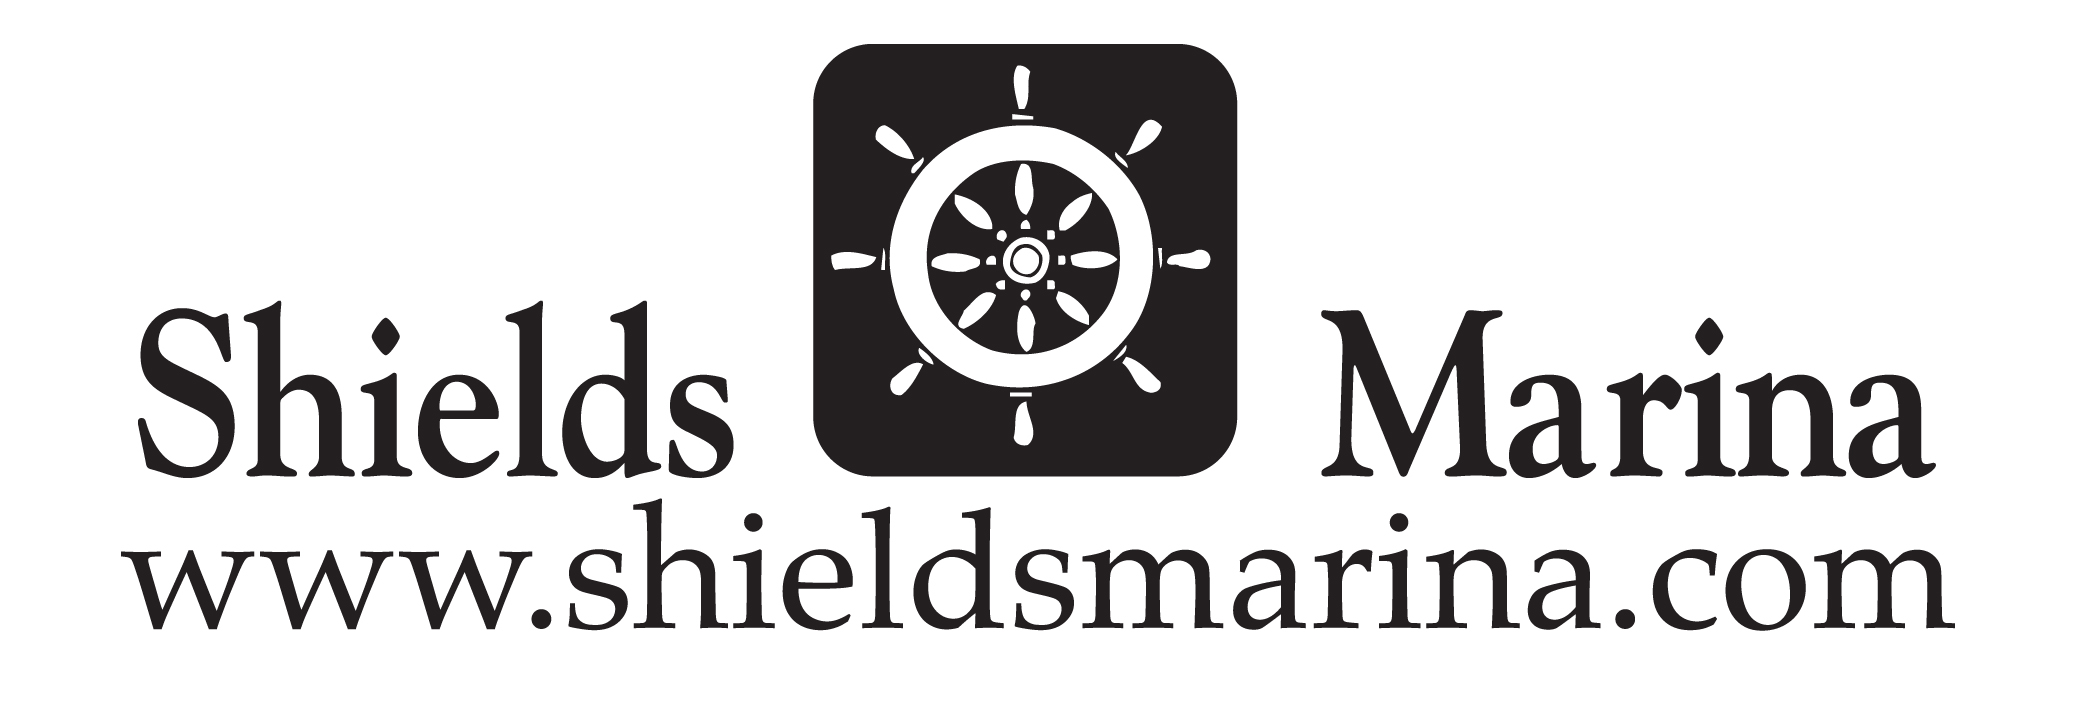 Shields Marina logo